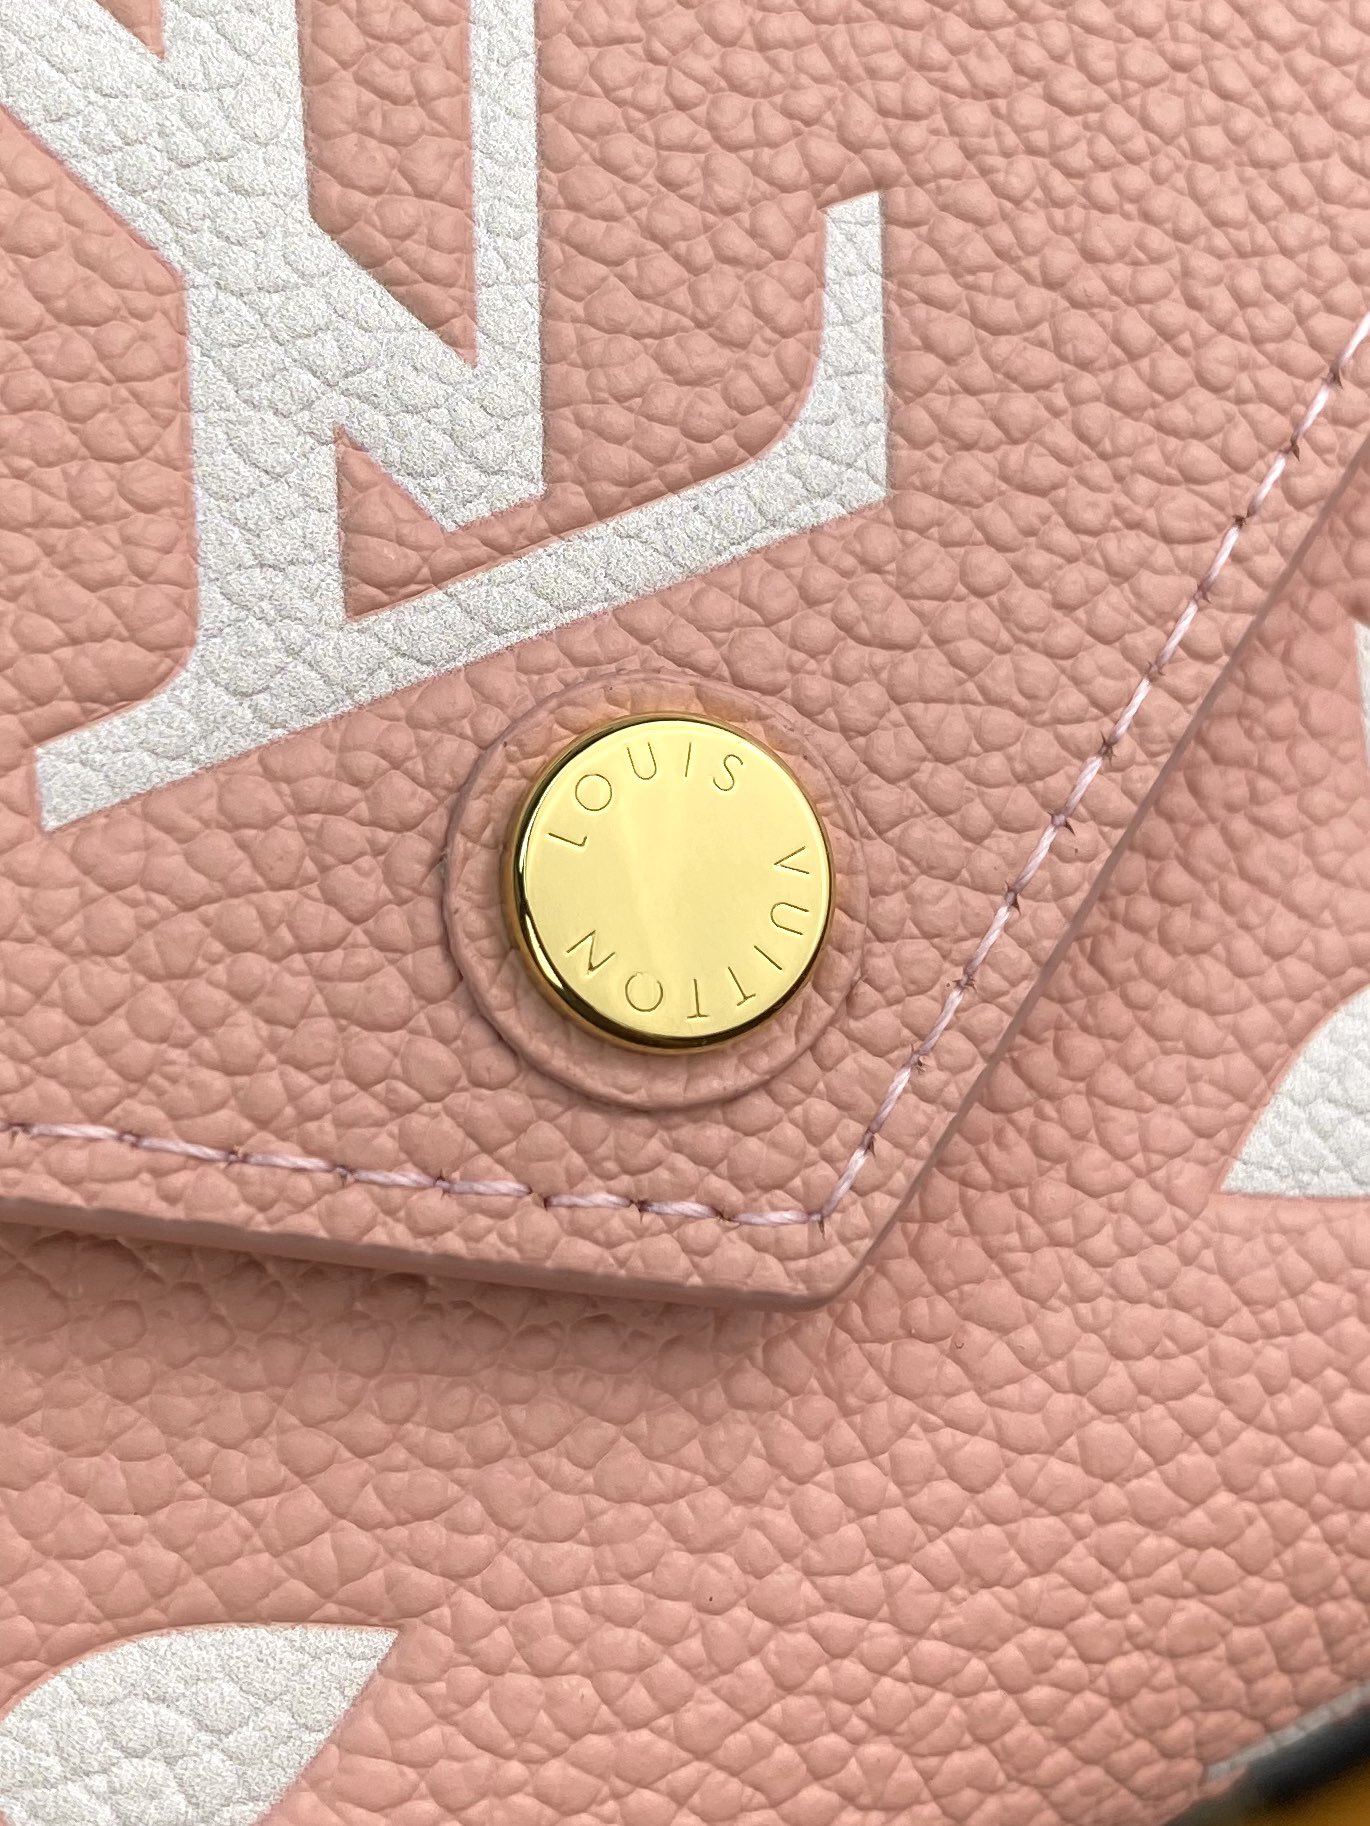 最新作 人気定番 爆買いルイウ ゙ィトン 財布偽物  柔らかなモノグラム  美しい配色_7